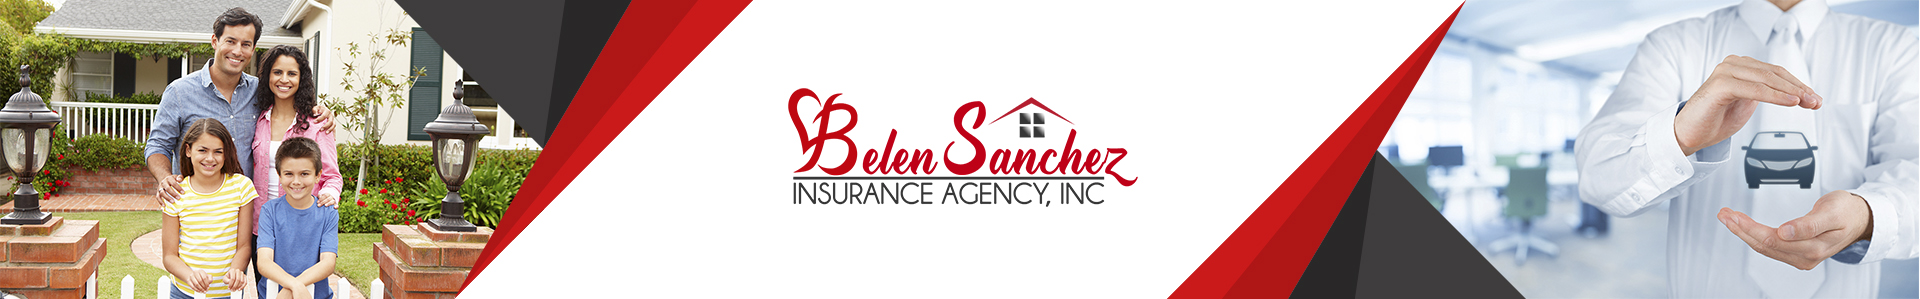 Belen Insurance Agency - header